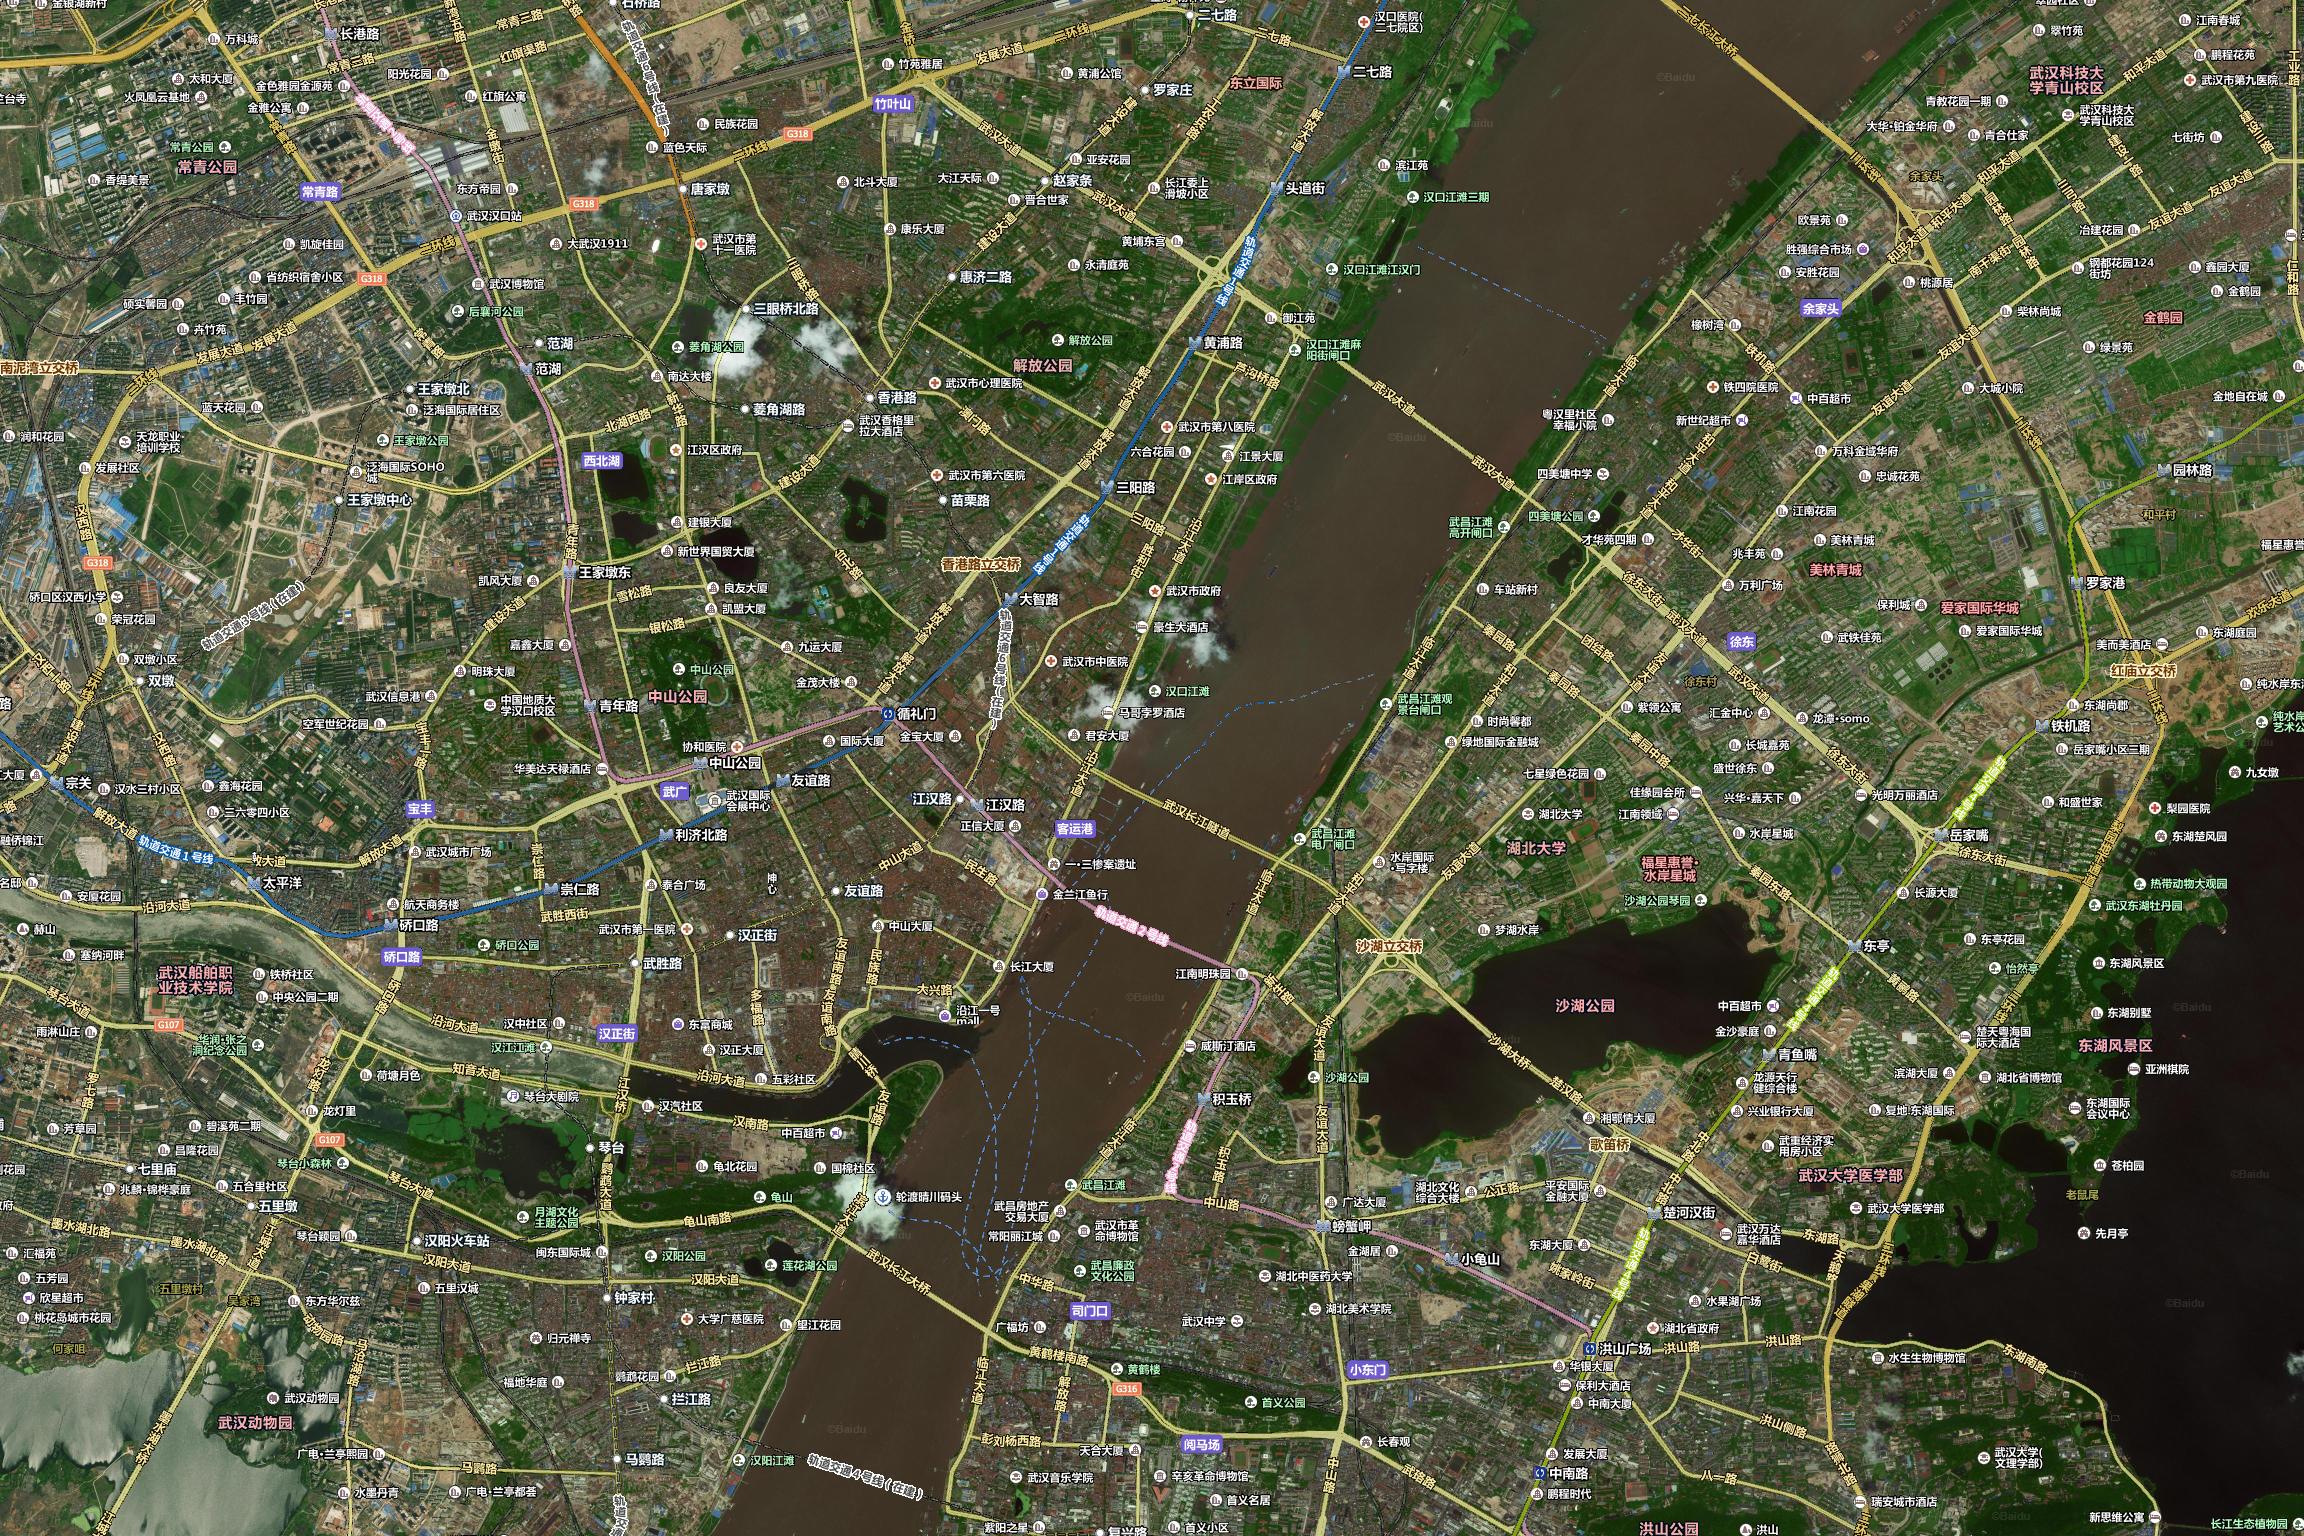 广州高清卫星地图 用百度卫星地图server下载 含标签、道路数据叠加 可商用 - clnchanpin - 博客园